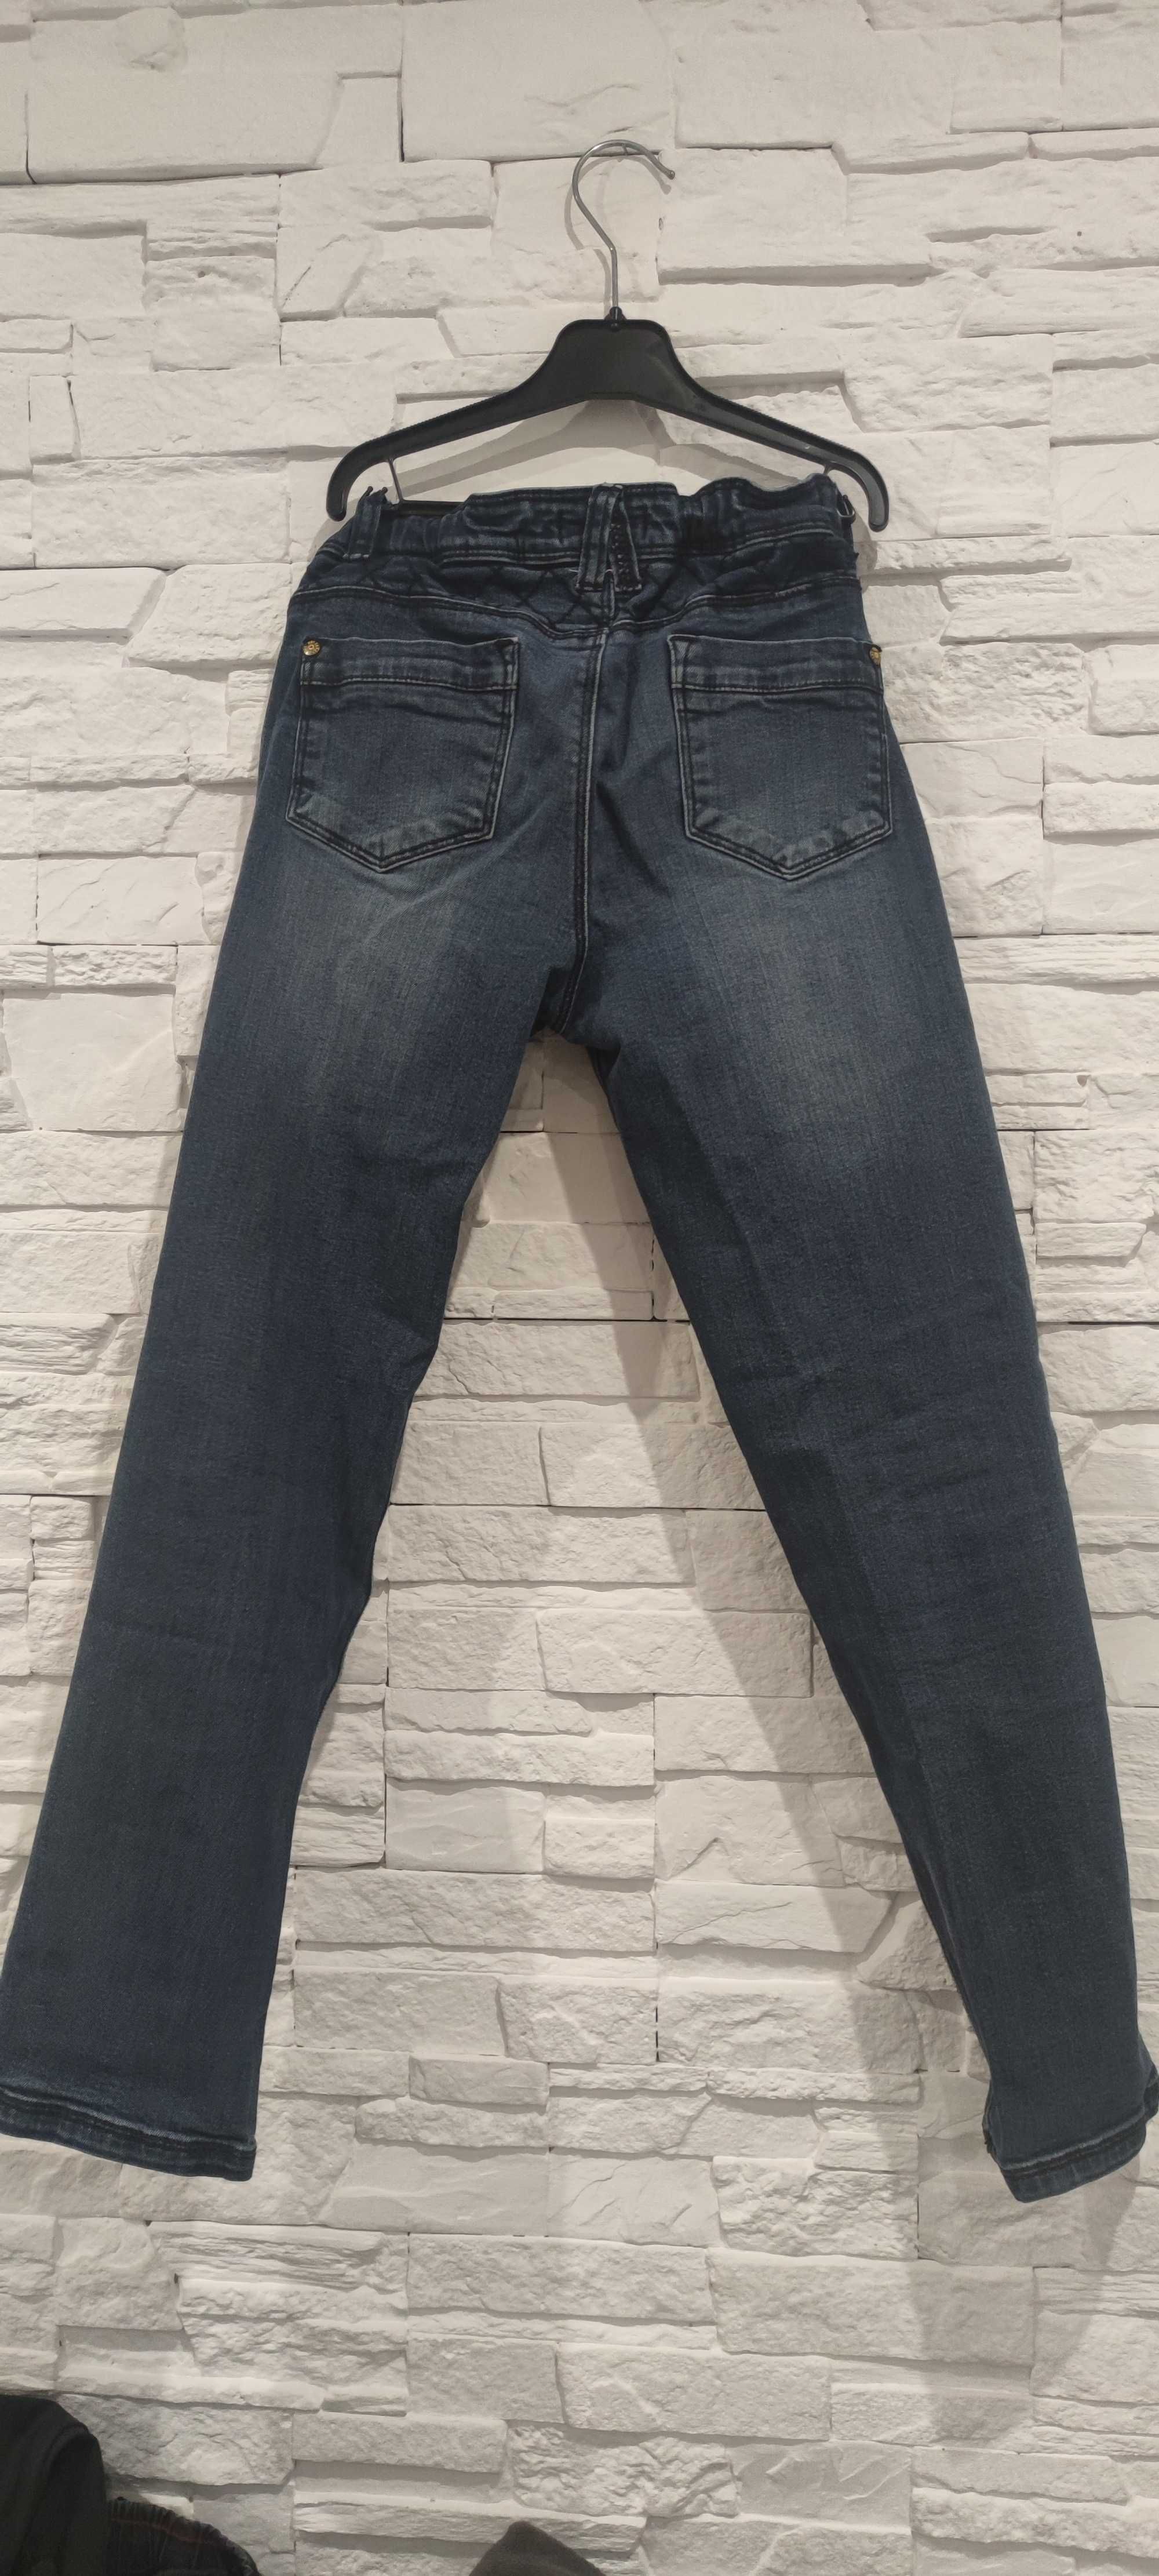 Spodnie chłopięce, jeans, 146 cm, Carry